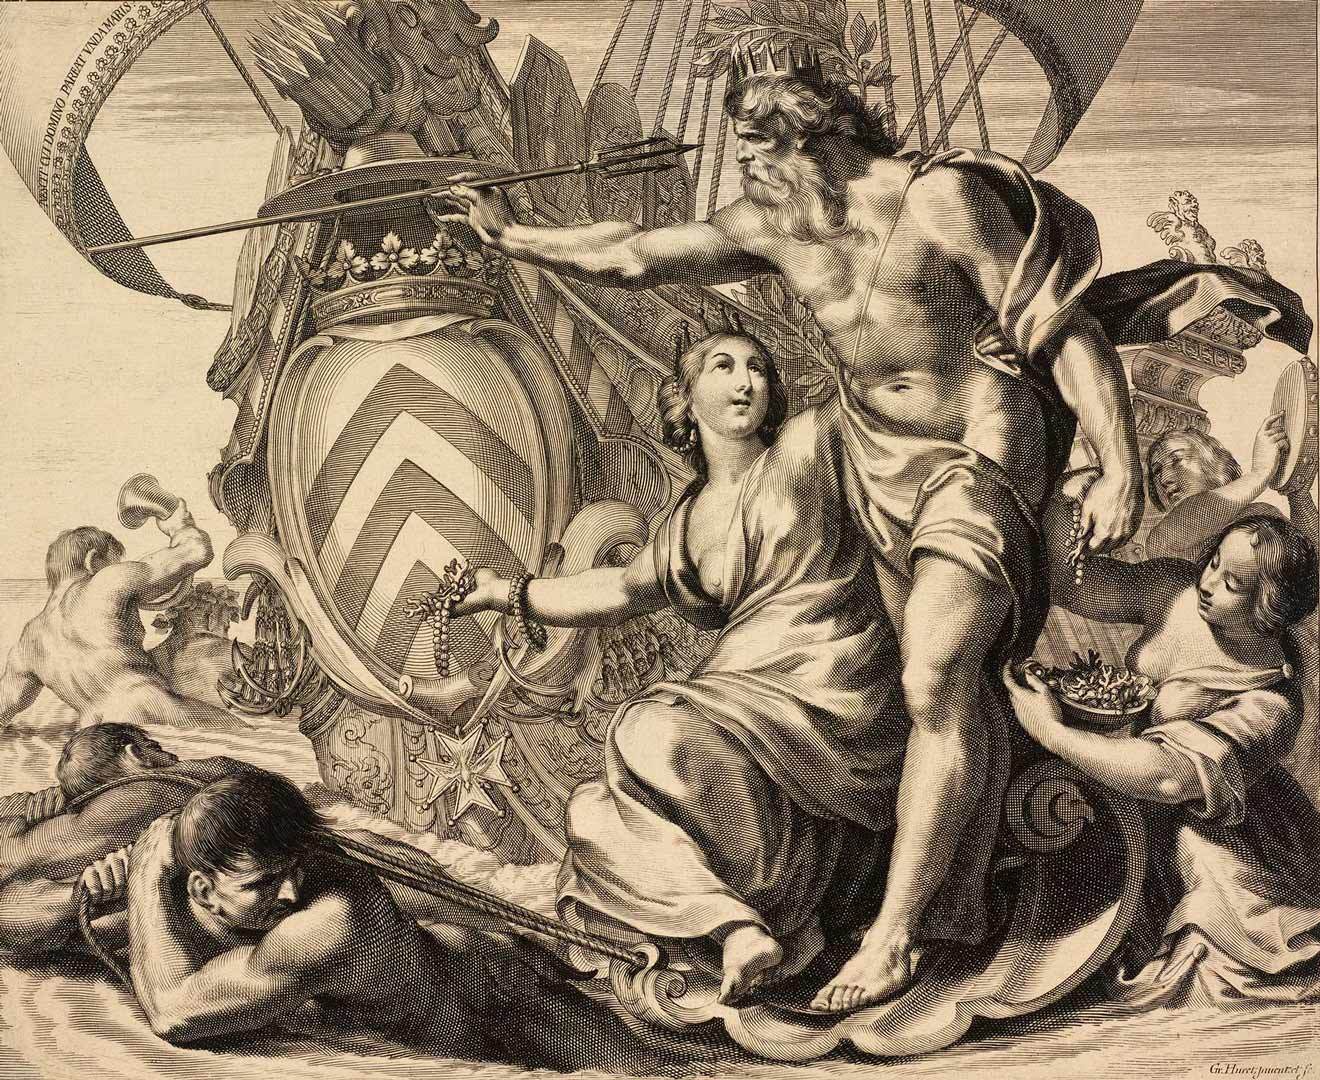 ნეპტუნი და თეტისი - იმპერიის სიმდიდრის მირთმევა კარდინალ რიშელიესთვის. გრეგუარ იურის გრავიურა. 1642 წელი